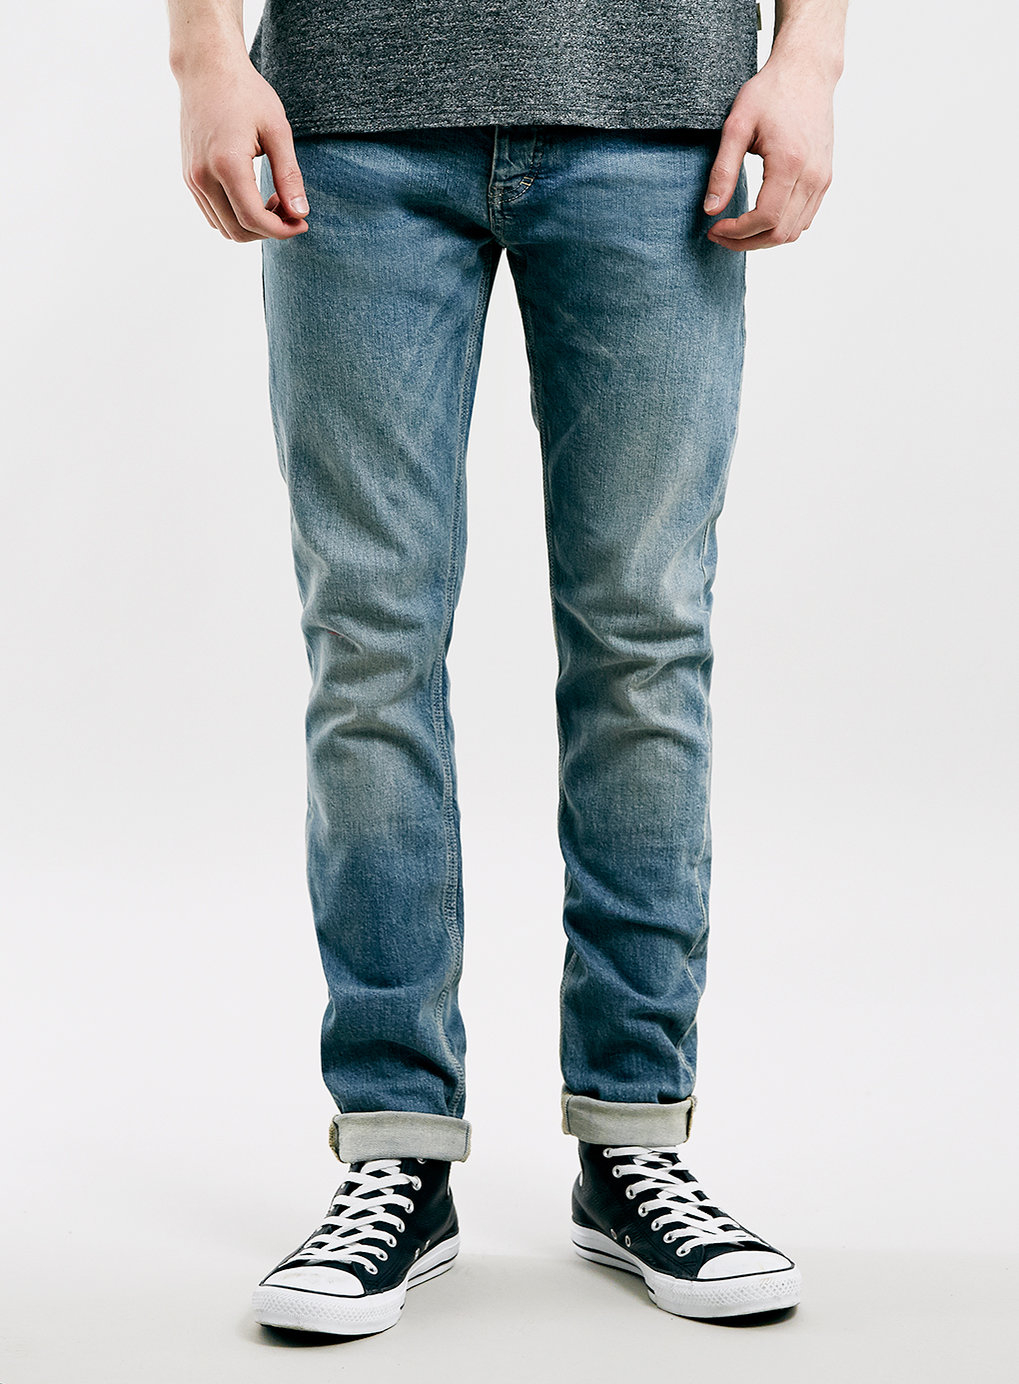 light blue jeans mens combination